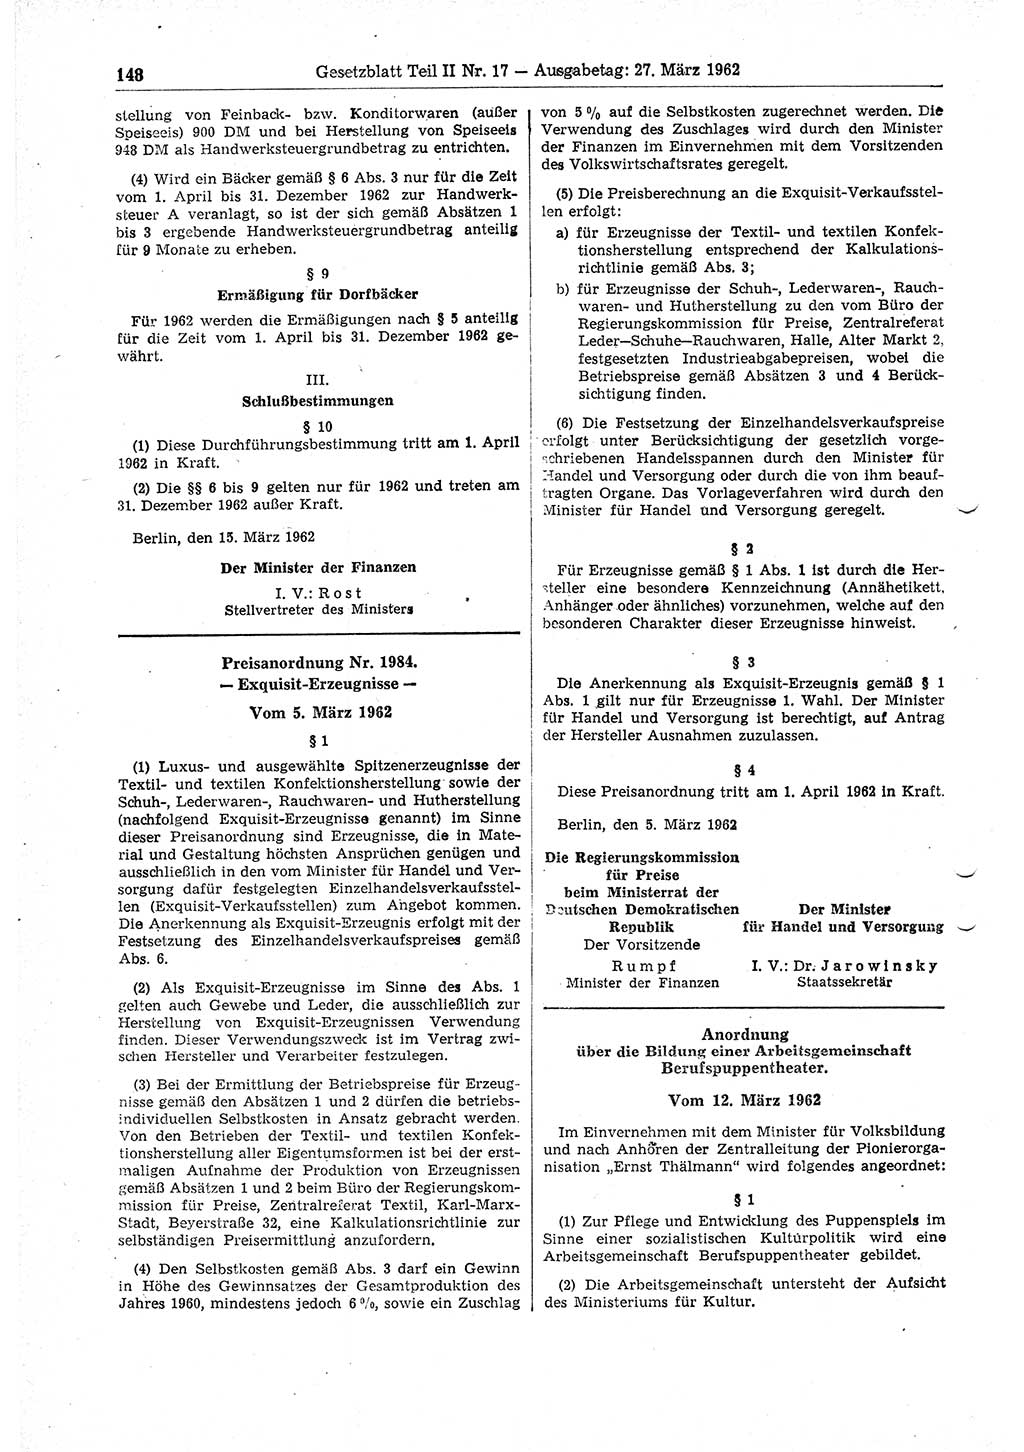 Gesetzblatt (GBl.) der Deutschen Demokratischen Republik (DDR) Teil ⅠⅠ 1962, Seite 148 (GBl. DDR ⅠⅠ 1962, S. 148)